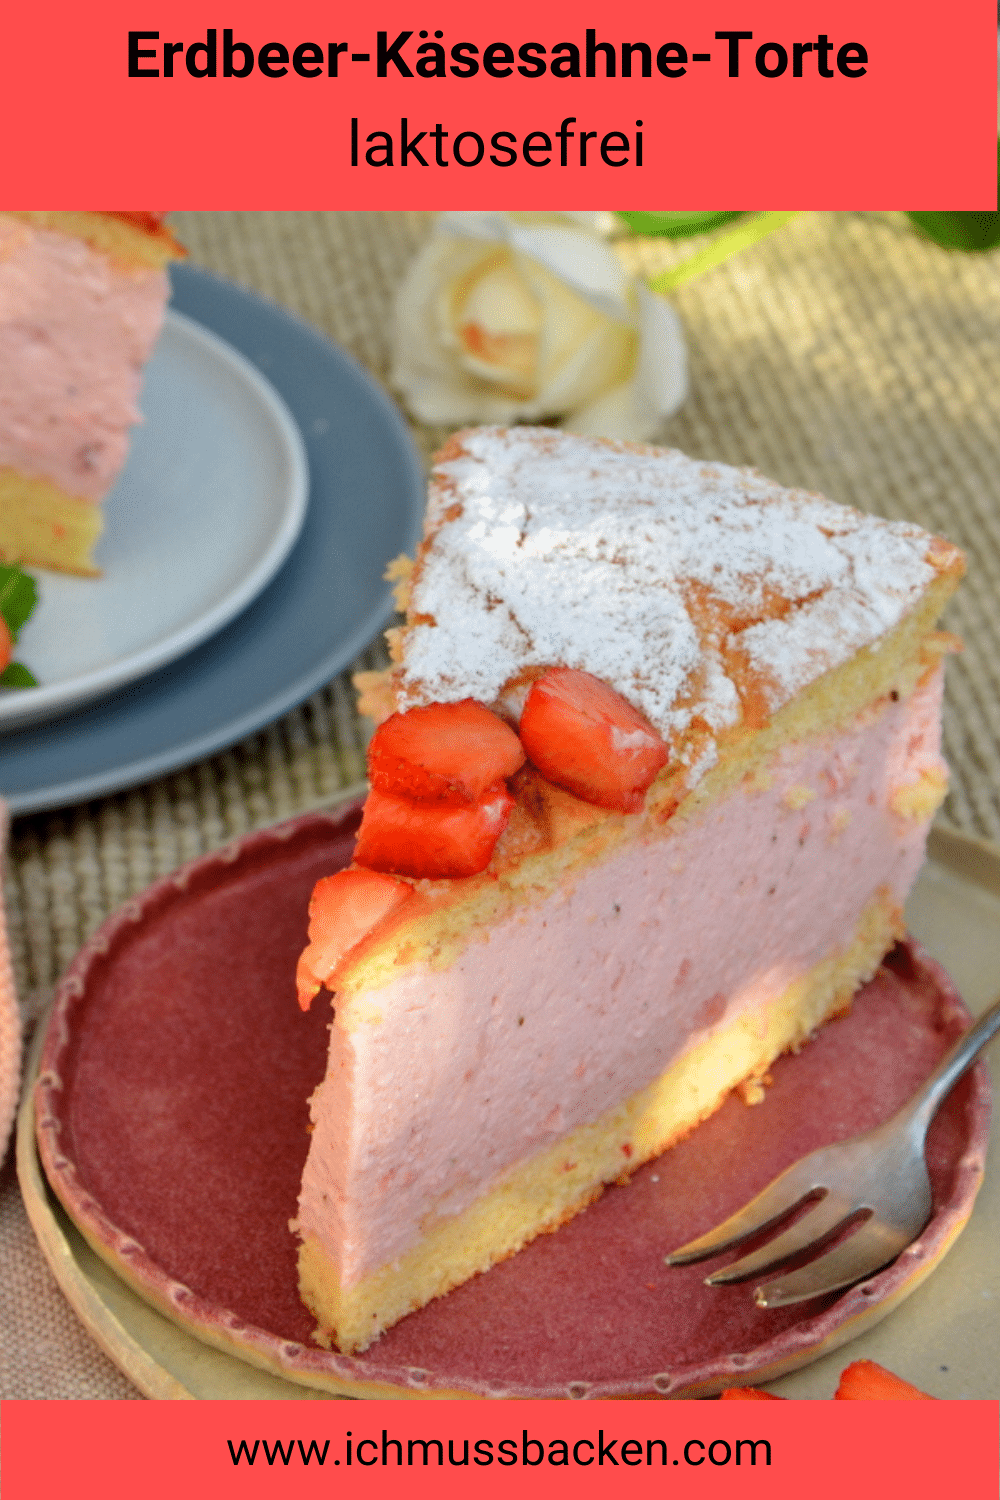 Erdbeer-Käsesahne-Torte